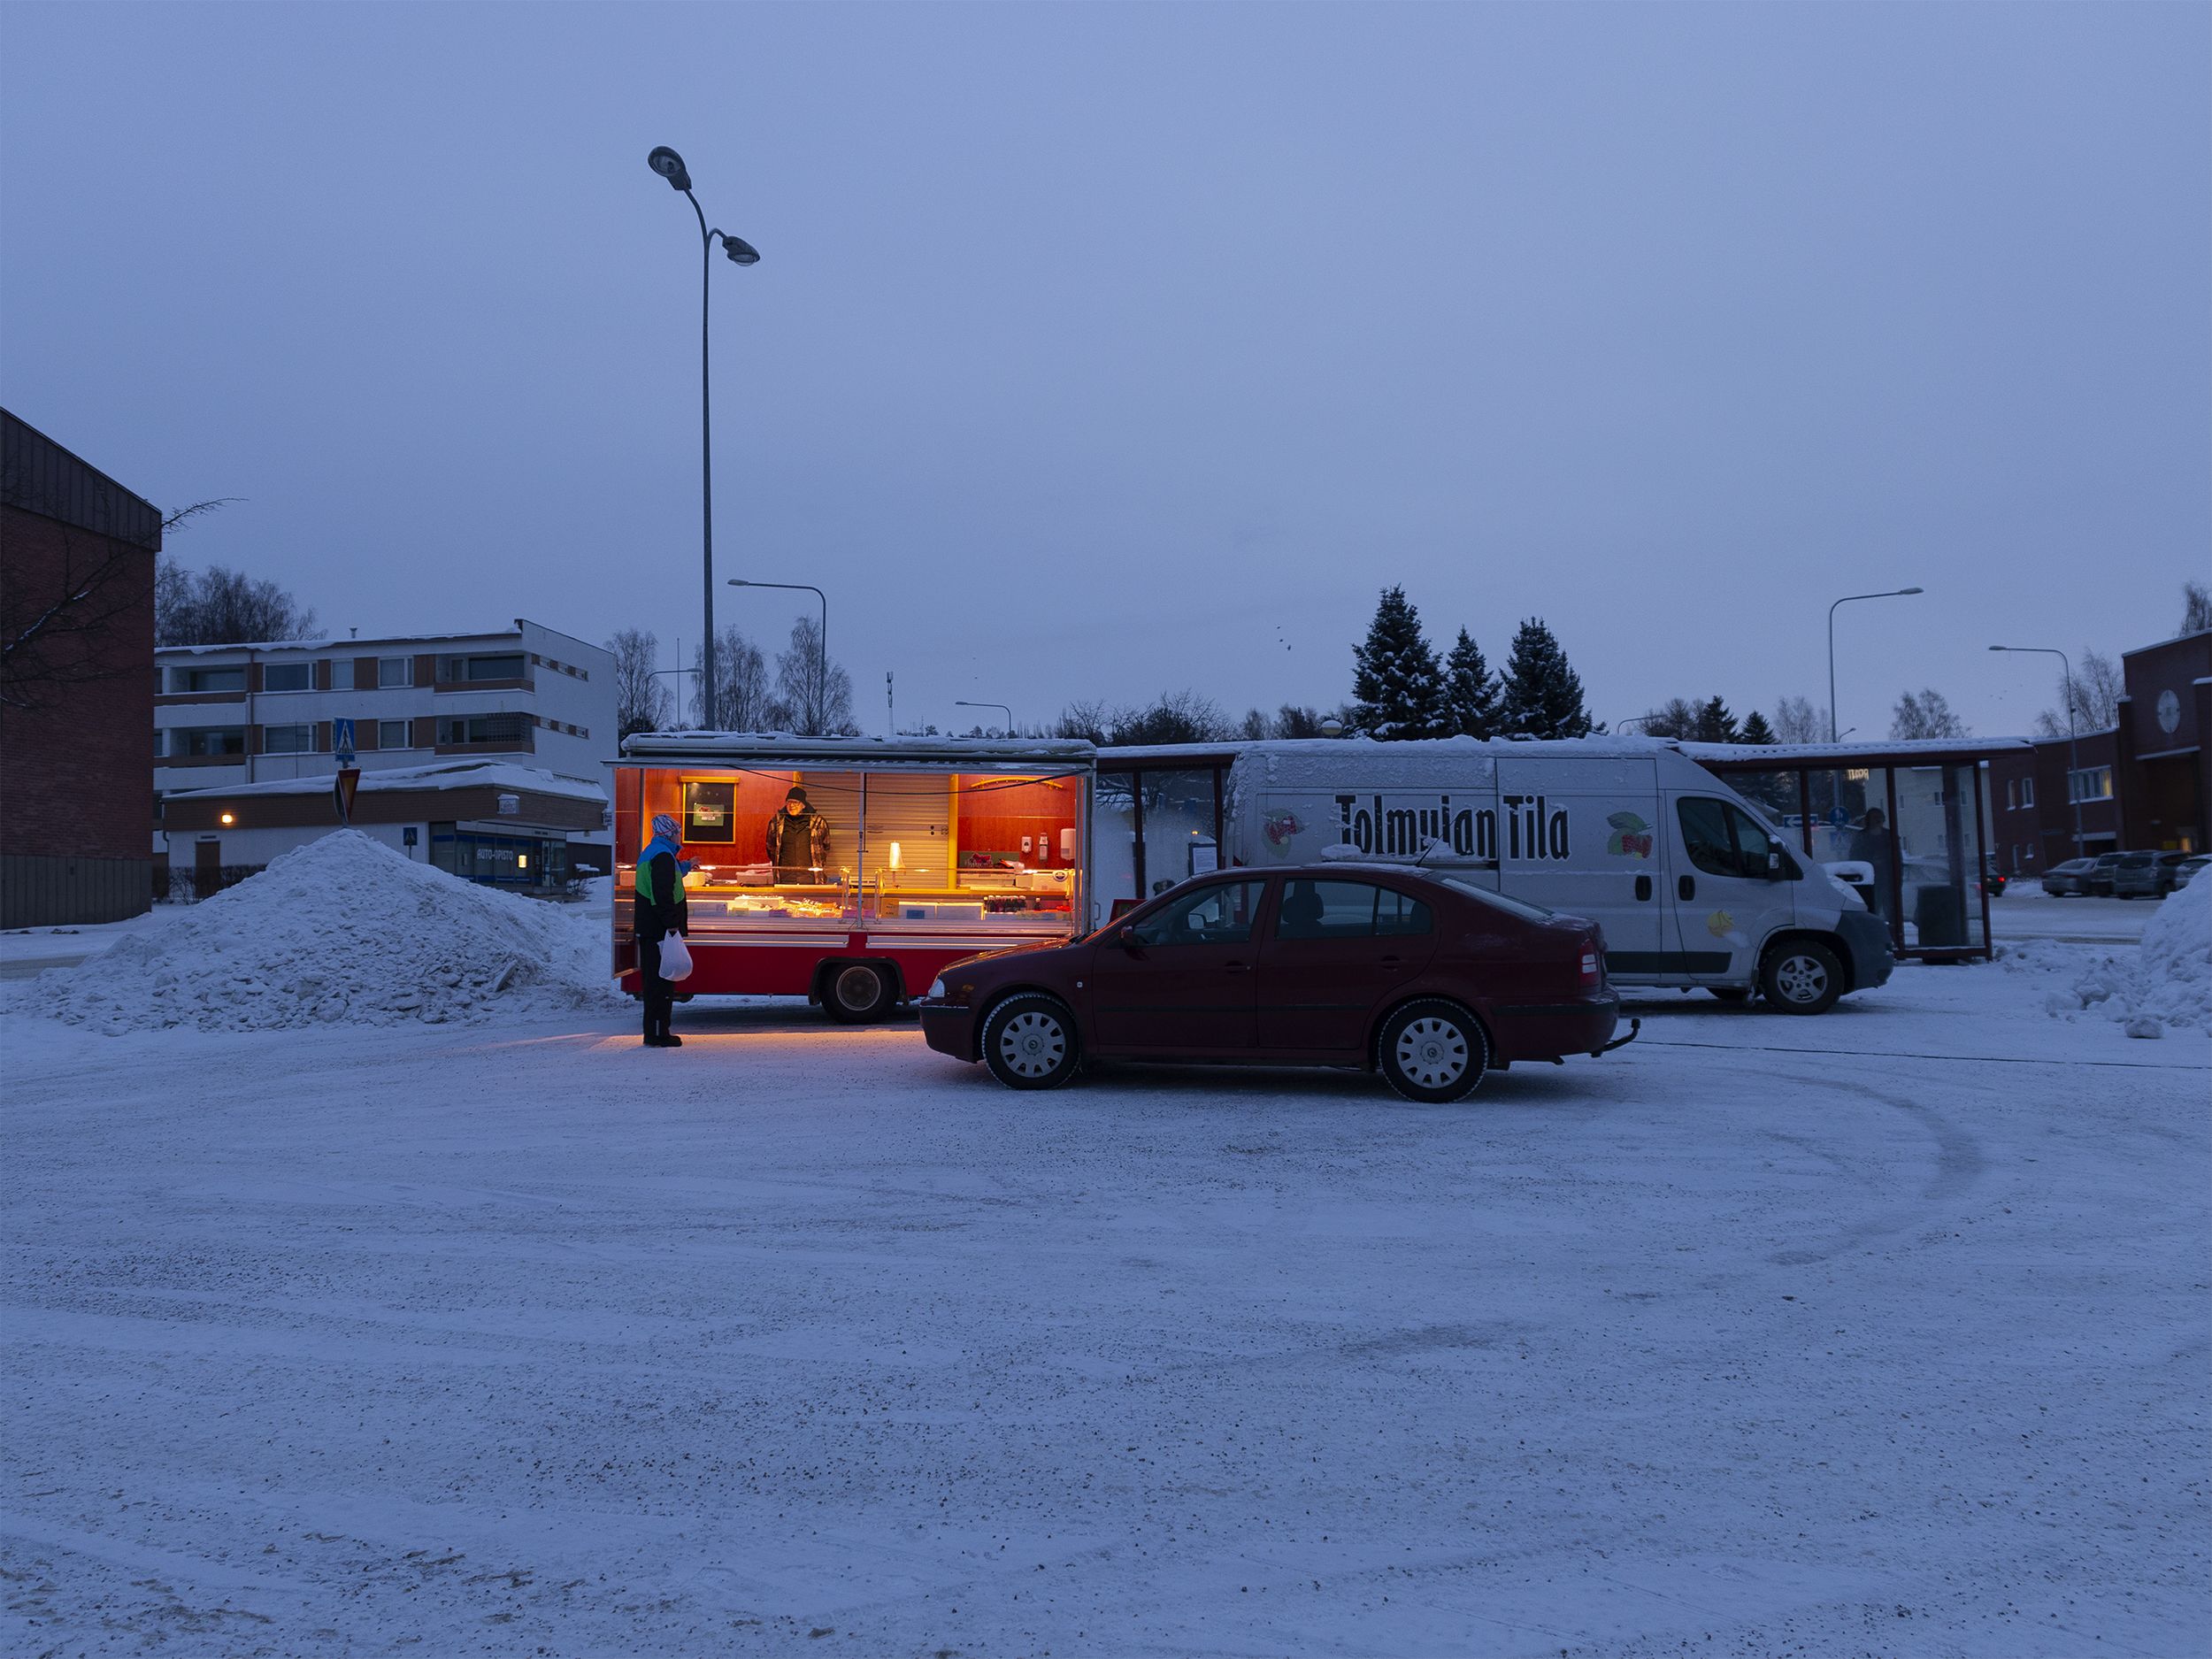 Kuvassa on Tolmulan tilan myyntiauto ja myyntivaunu Suolahden torilla. On aamuhämärä tammikuussa. Paljon lunta ja pakkasta.